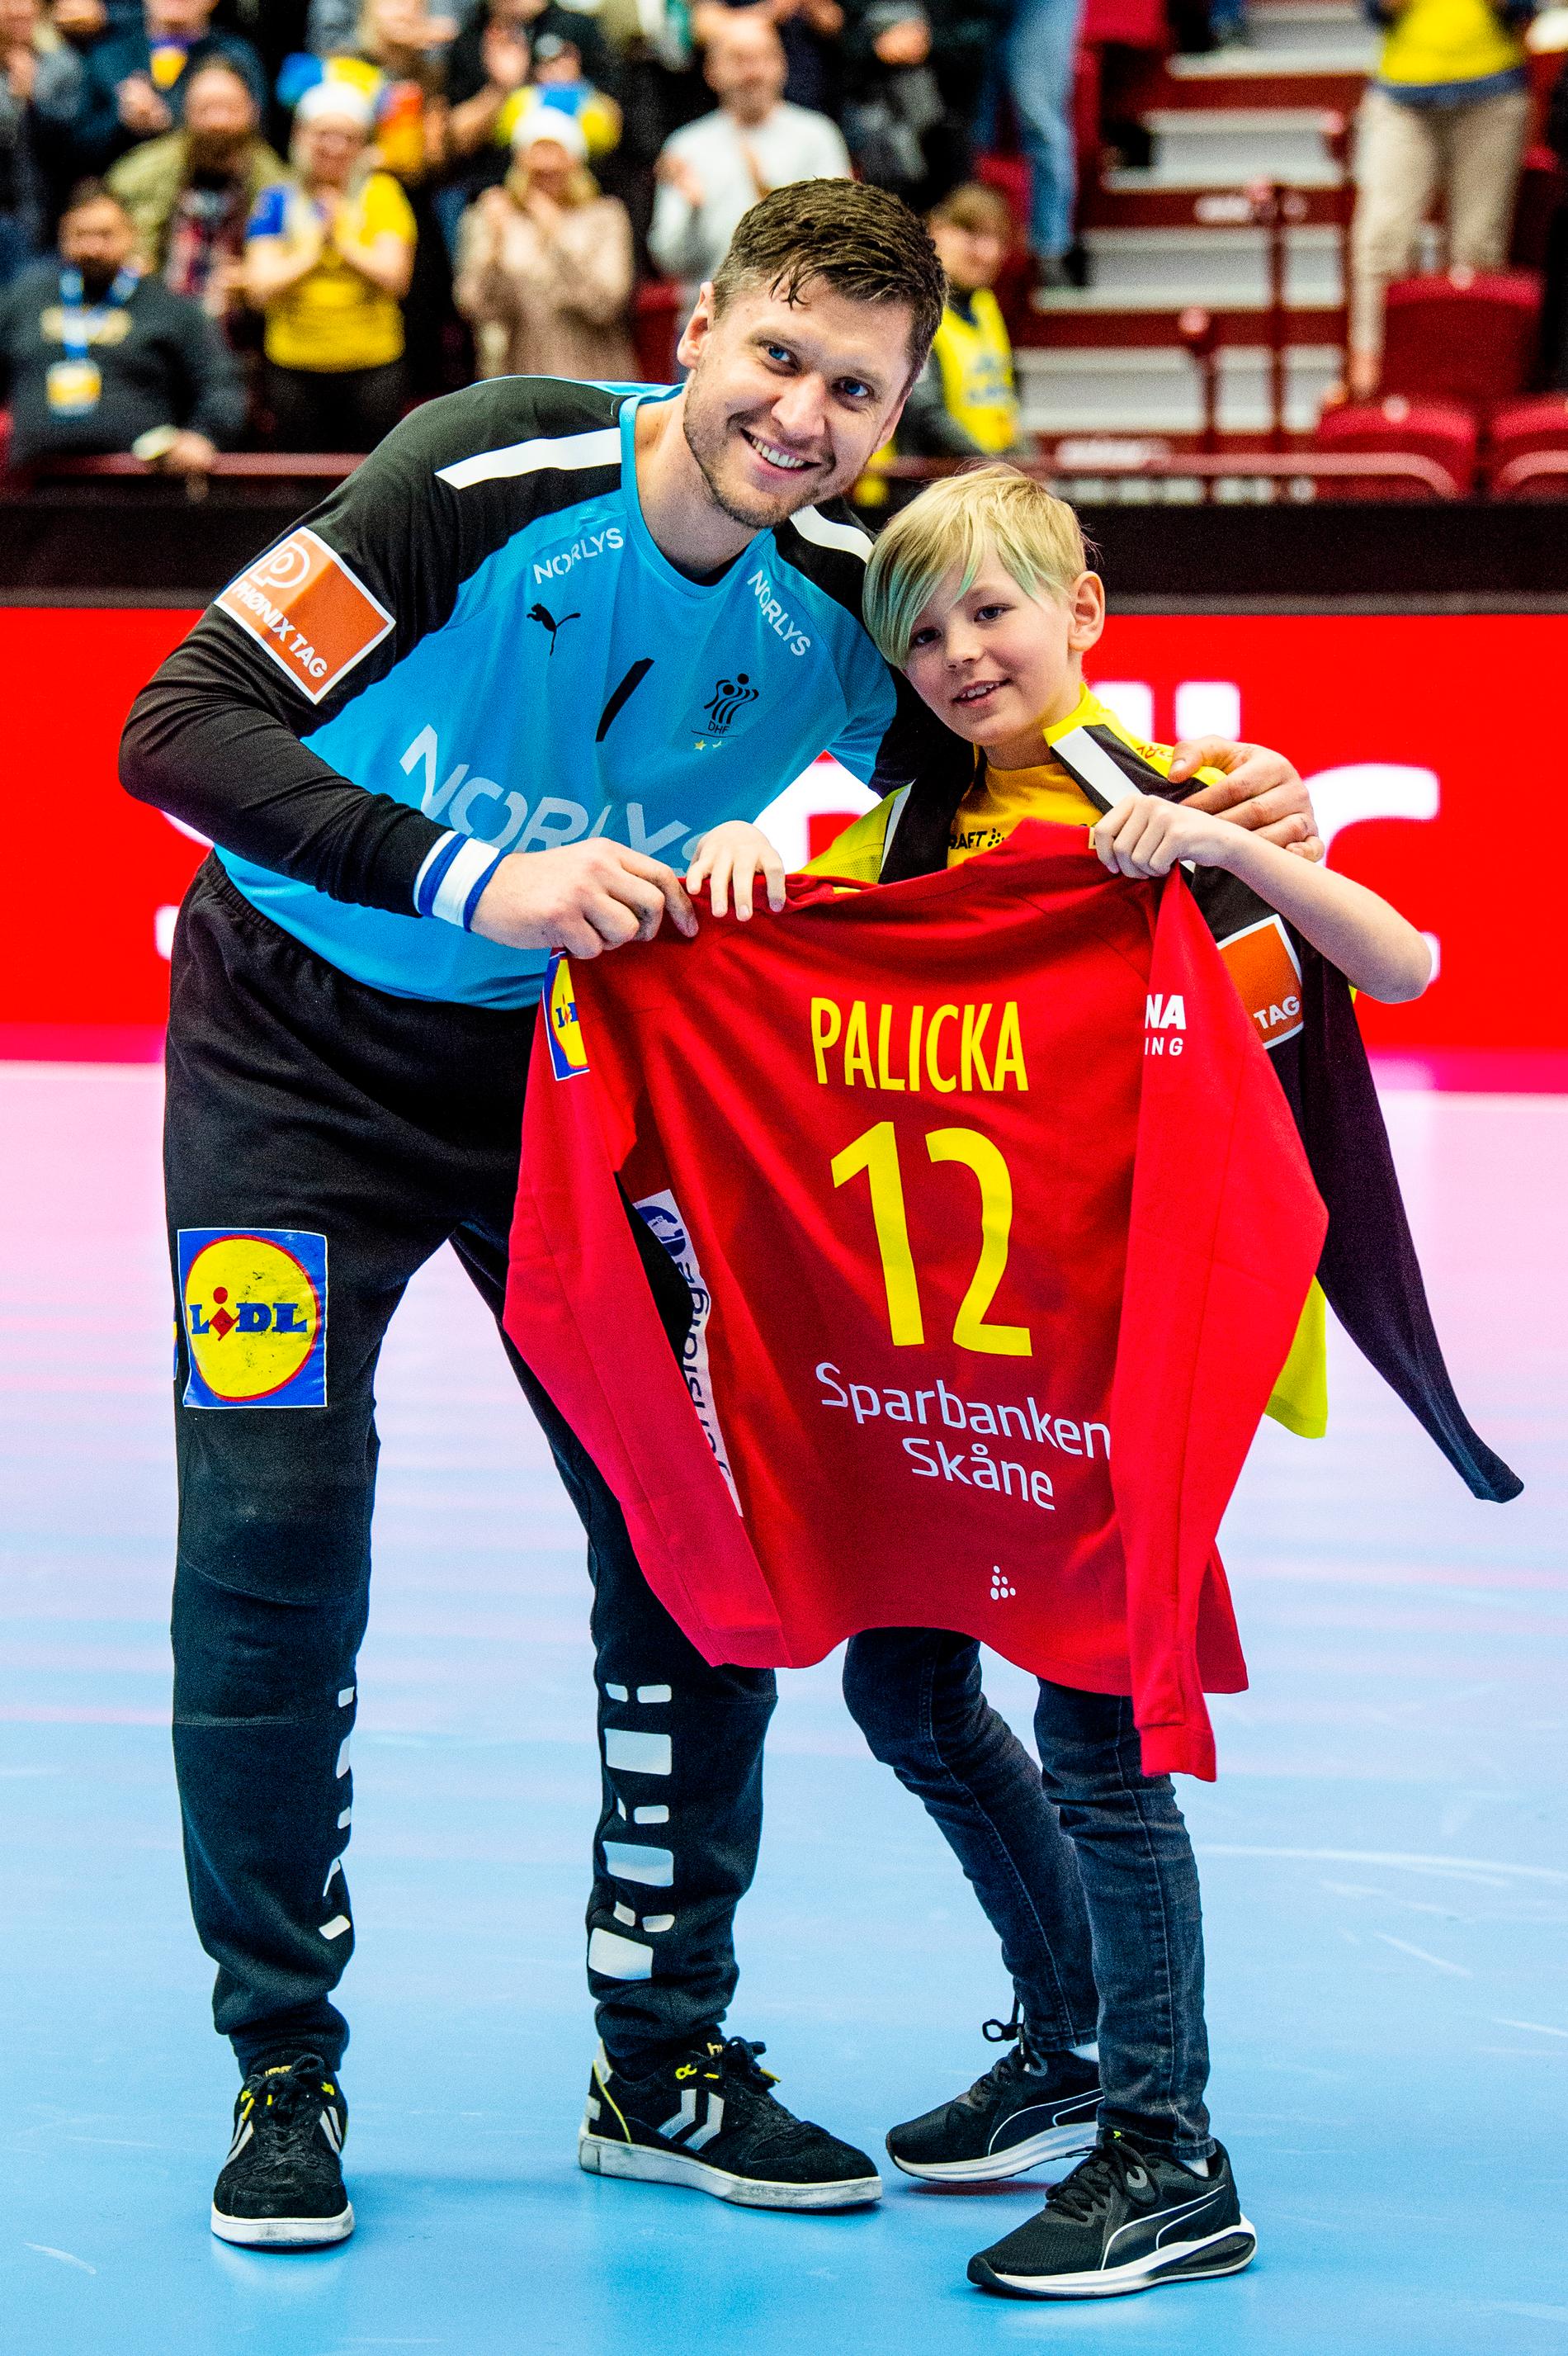 Här får danske landslagsmålvakten Niklas Landin en tröja med Palicka på ryggen. 